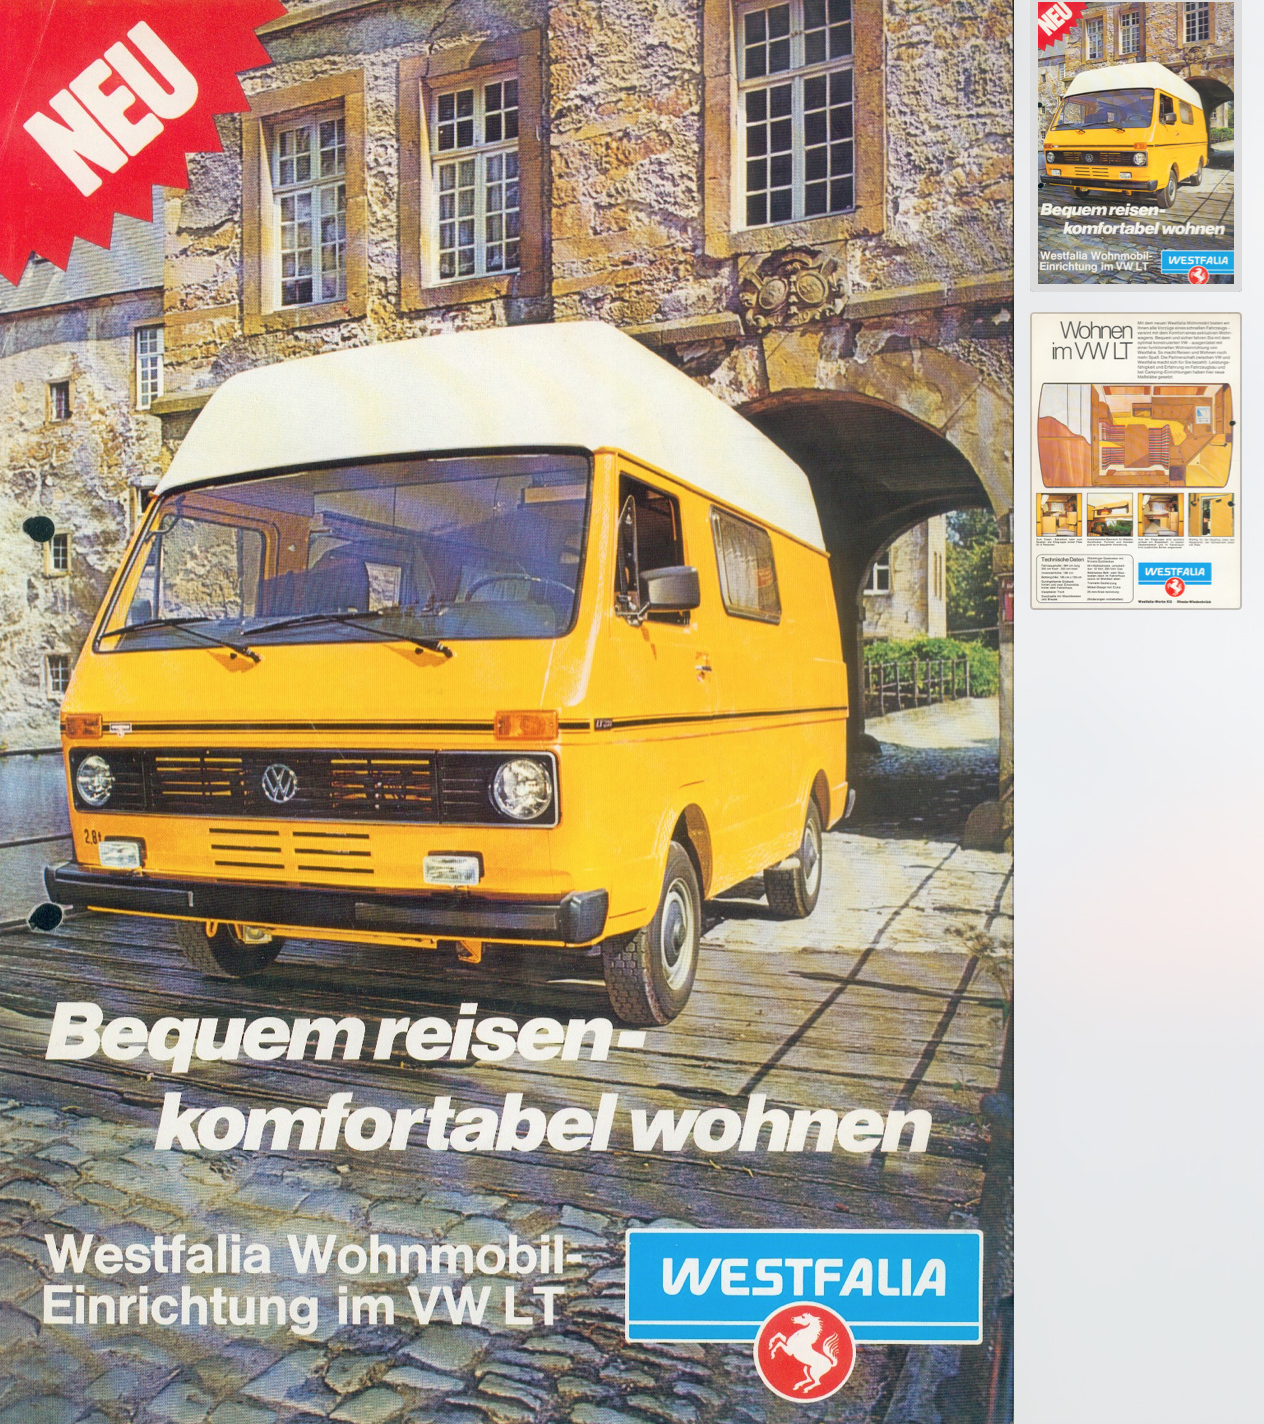 1980-00-Westfalia-Wohnmobil-VW-LT